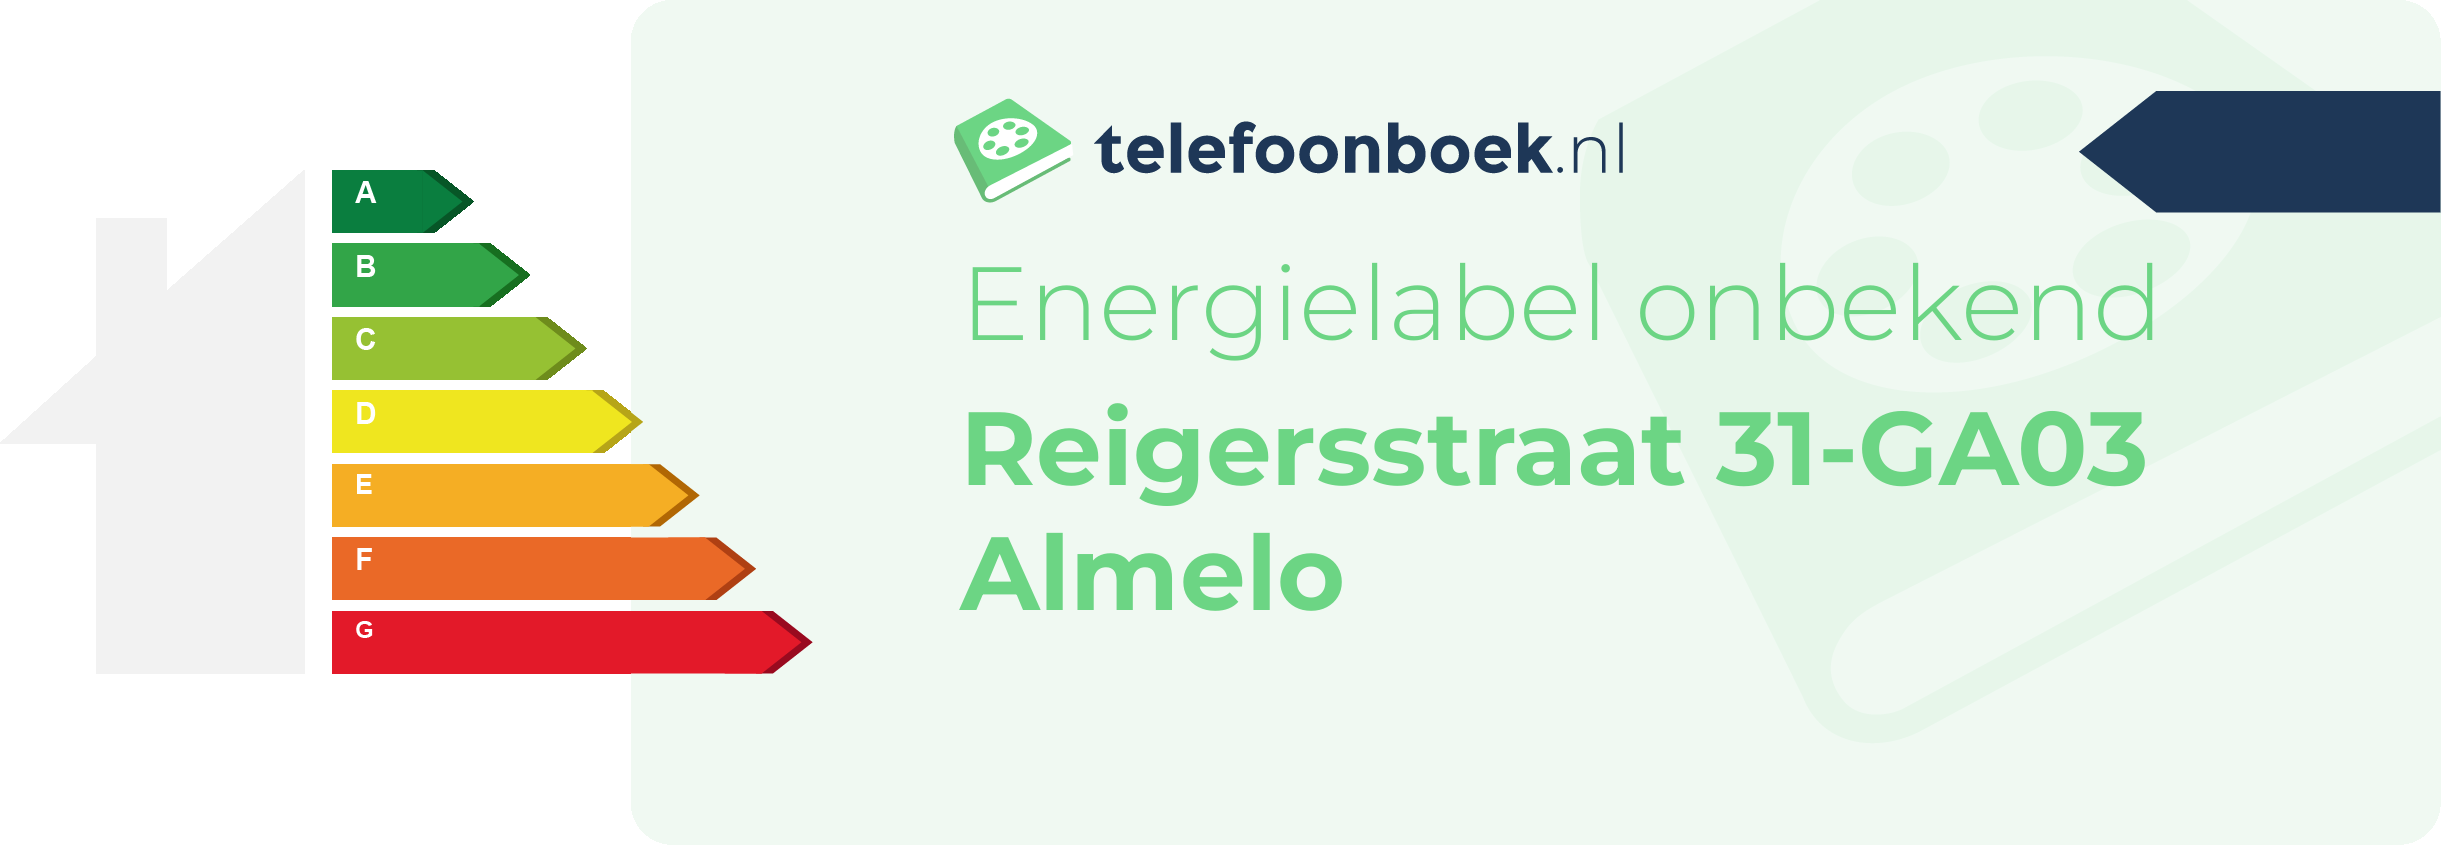 Energielabel Reigersstraat 31-GA03 Almelo